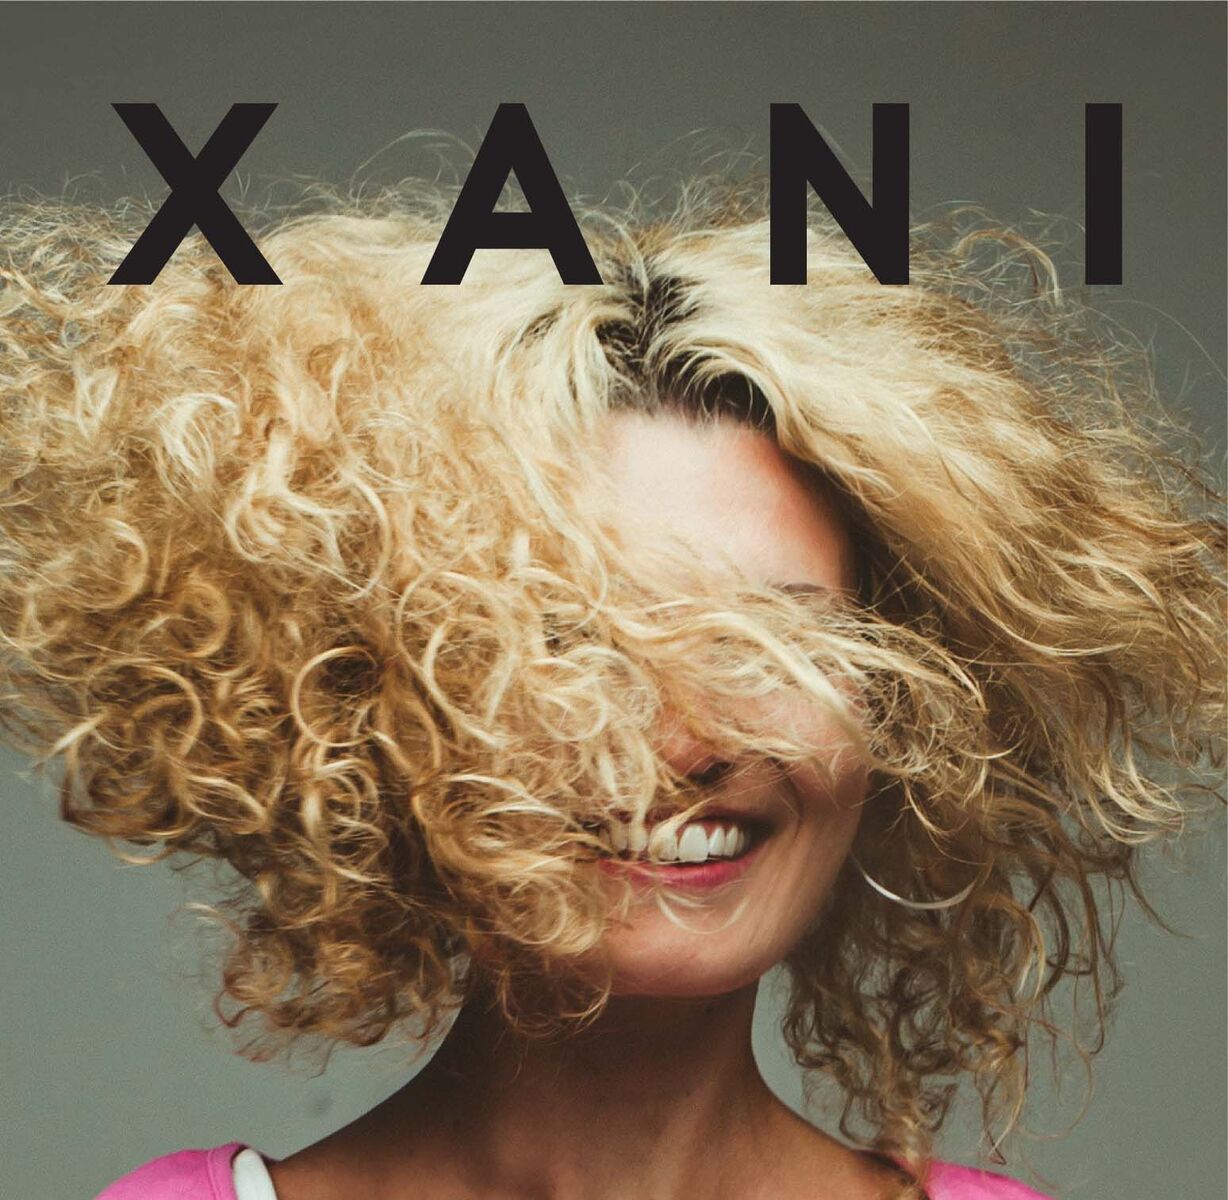 XANI's Debut EP Out April 14